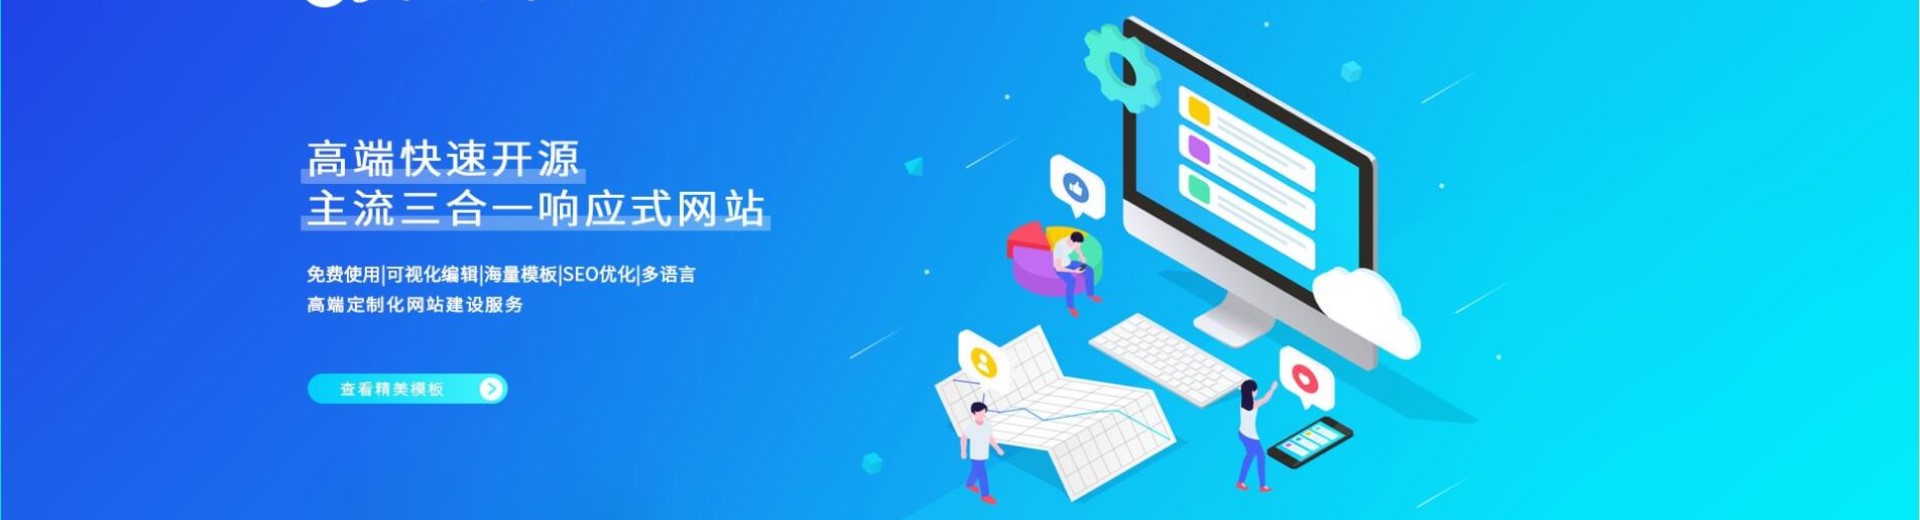 上海网站建设公司响应式自适应网站模板